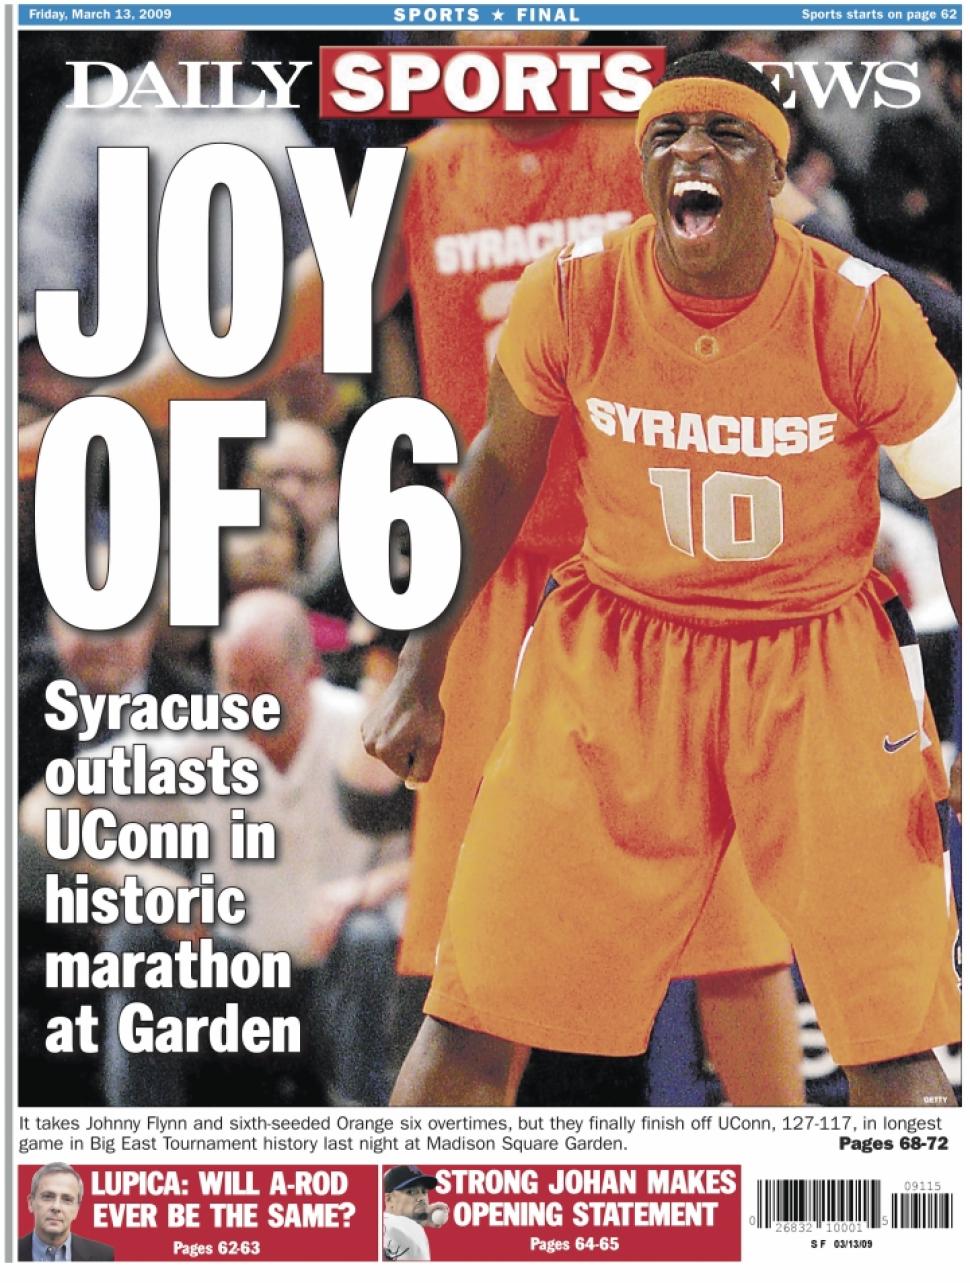 Couverture du Daily Sports News consacré à la victoire des Orangemen (c) Daily Sports News